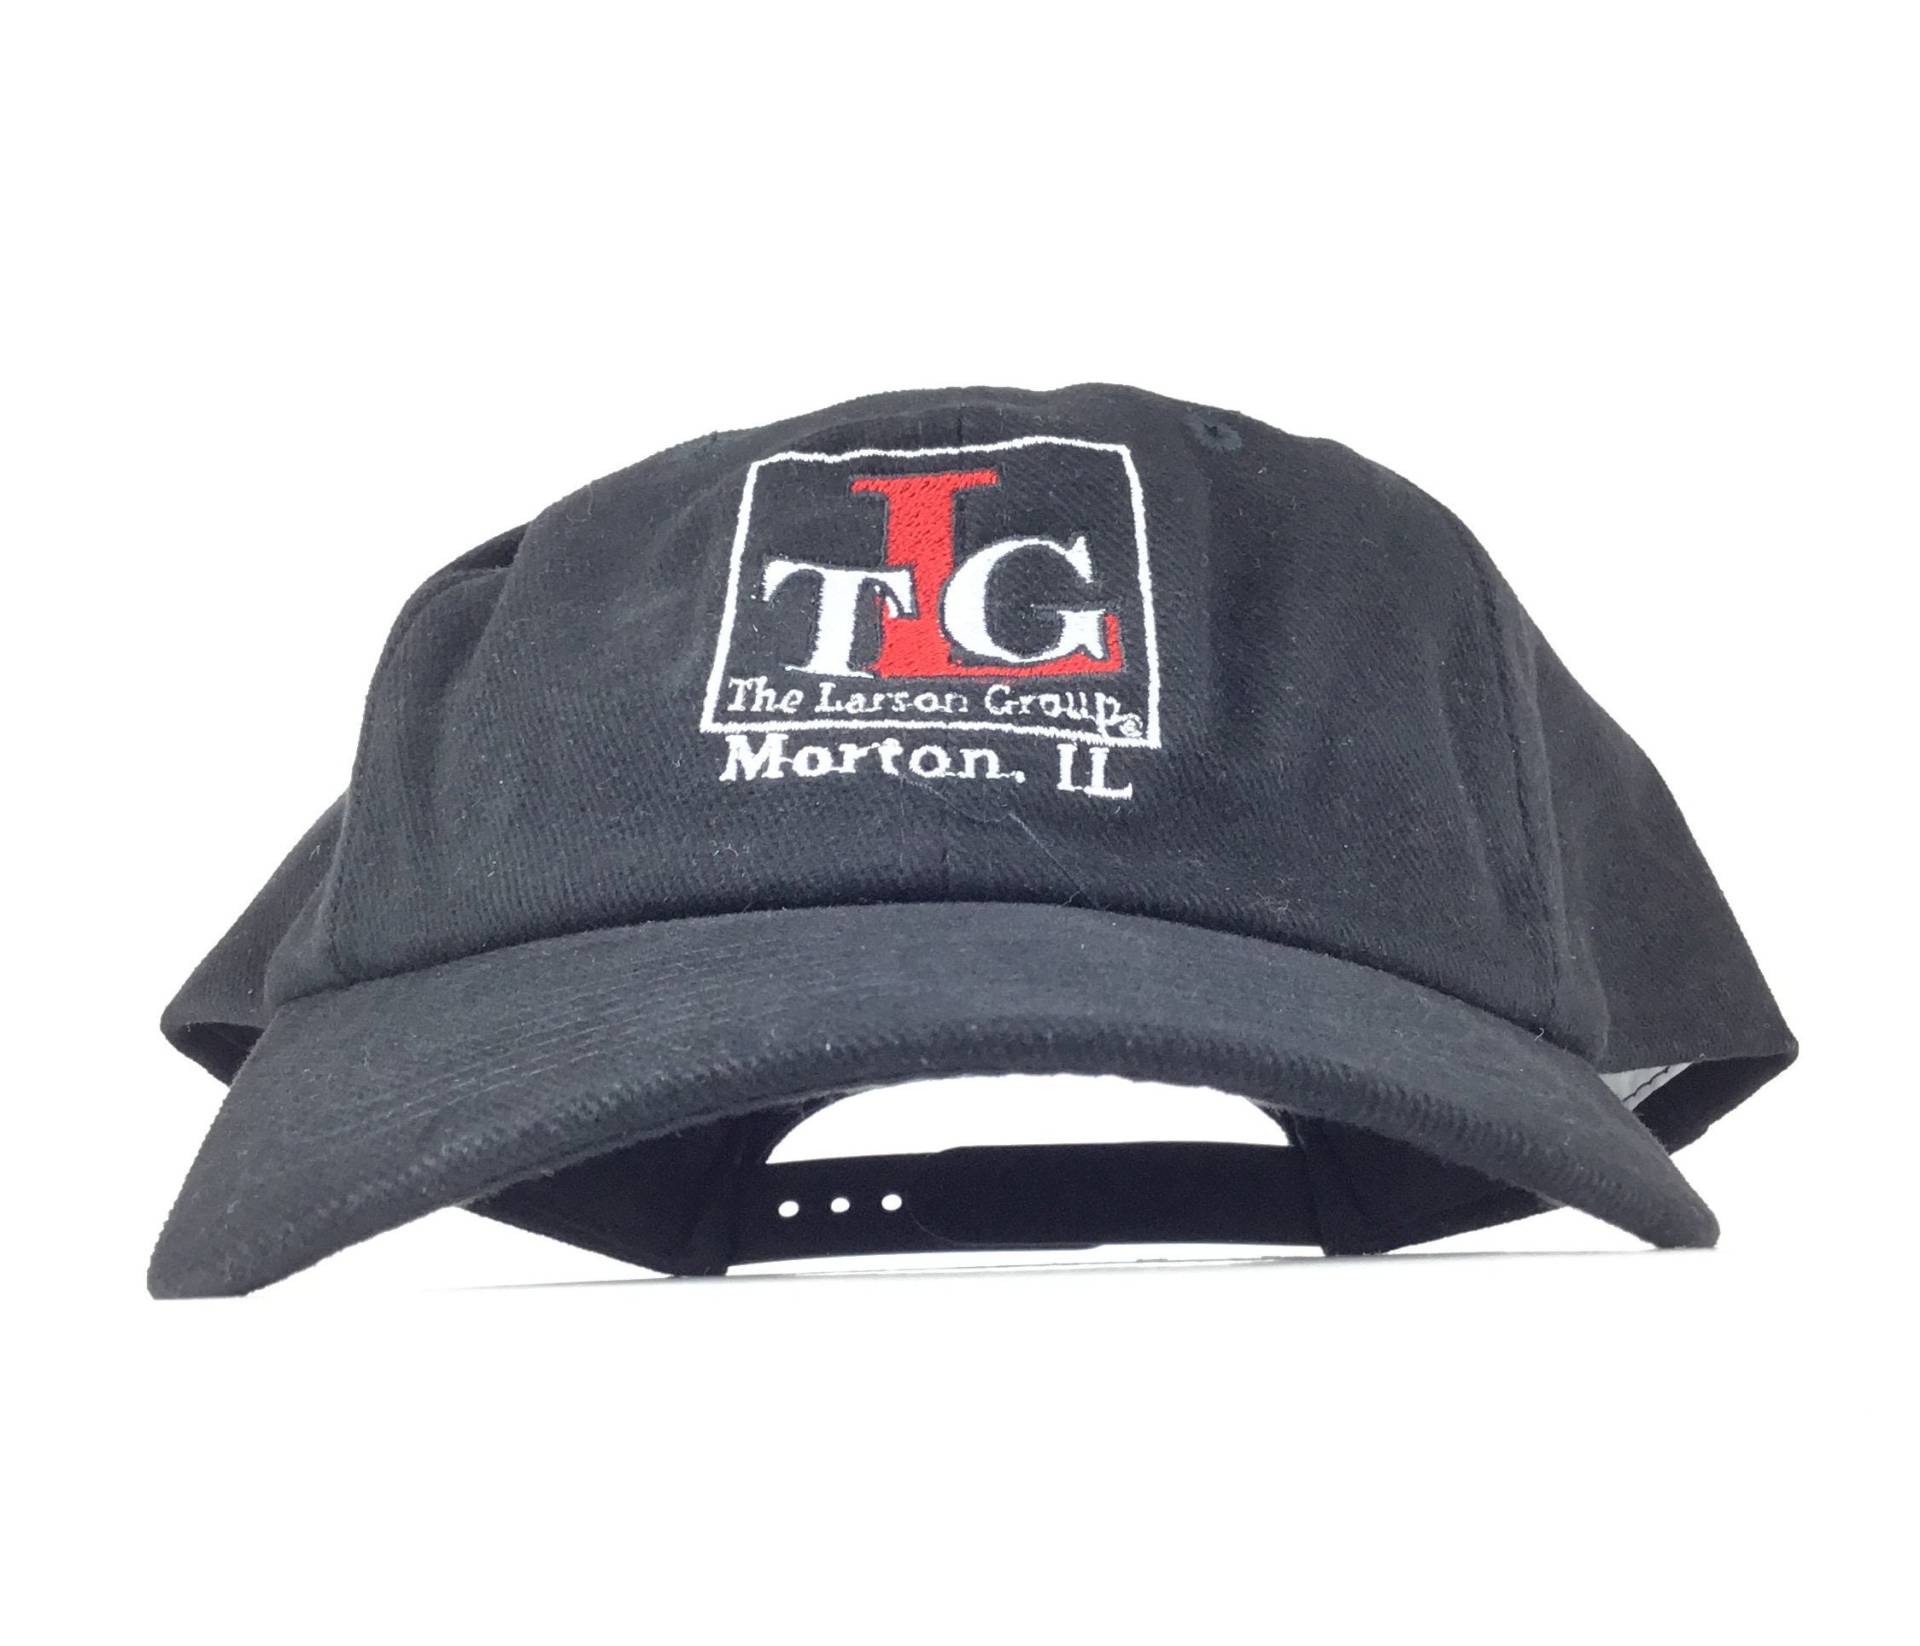 Vintage 1990Er Tlc The Larson Group Morton Il Illinois Baseball Cap Hat Adj. Herrengröße Baumwolle von arm90210